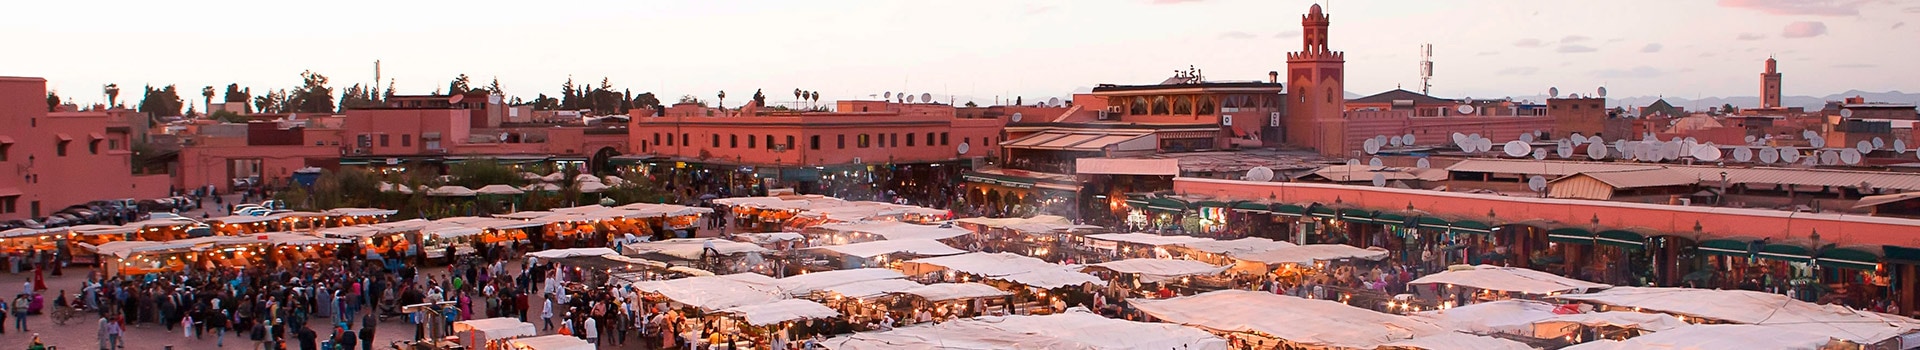 Malaga - Marrakech